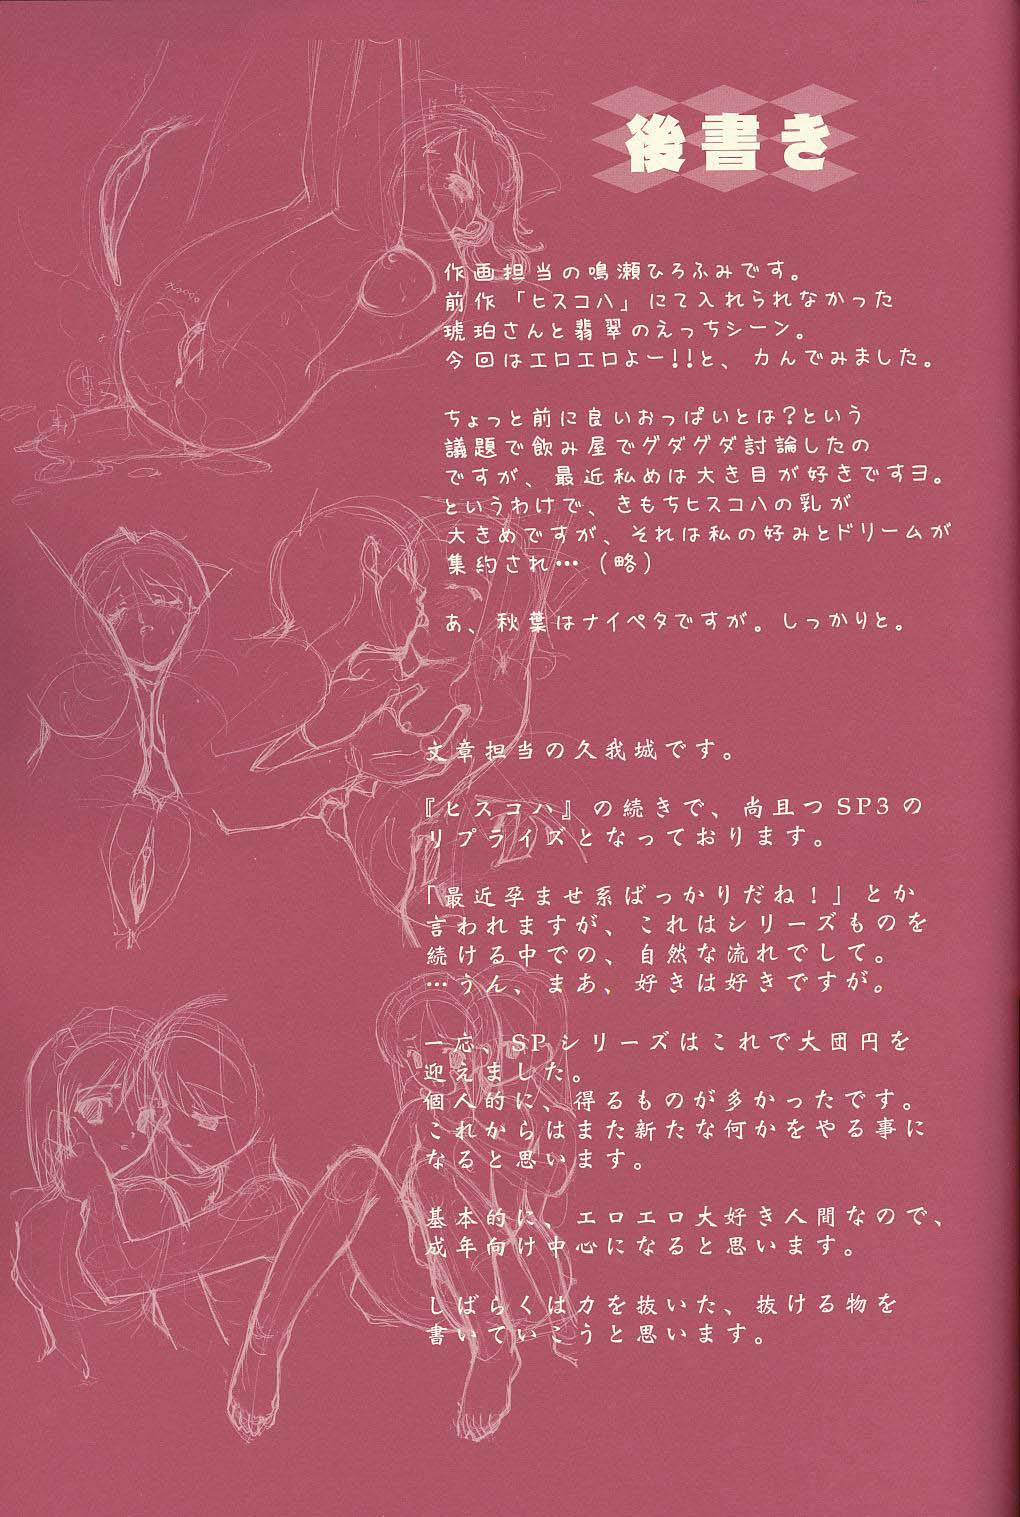 (C65)[恋愛漫画家 (鳴瀬ひろふみ)] Scribble Project 4 (月姫)